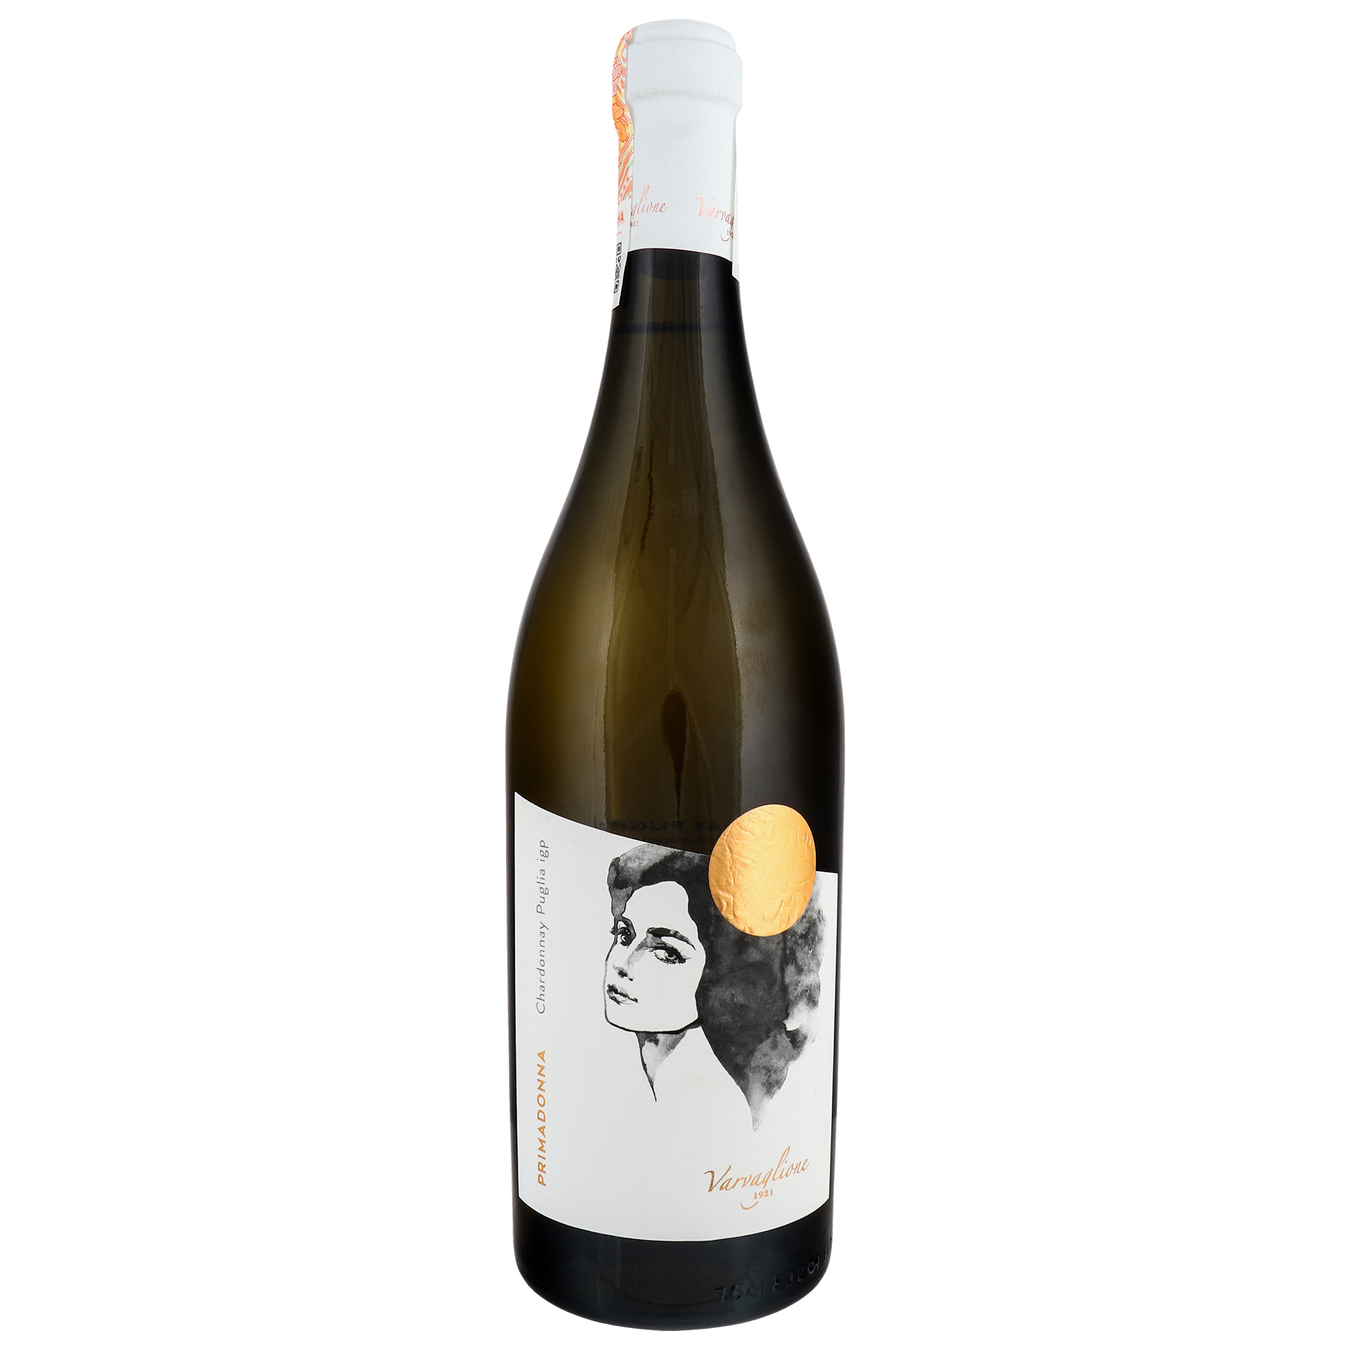 Wine Primadonna Chardonnay di Puglia IGP semi-dry white 13,5% 0,75l